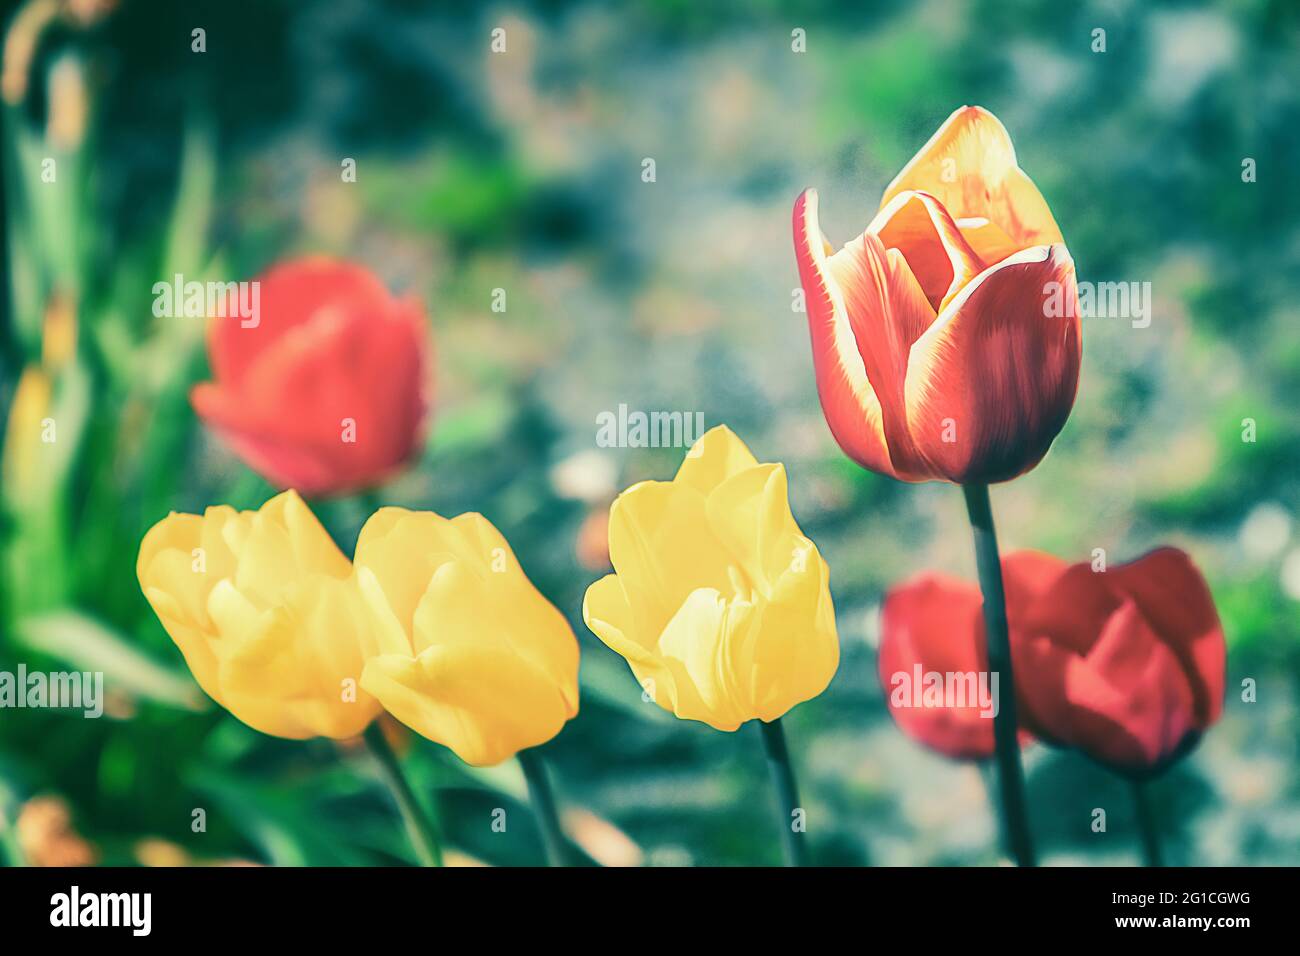 Ein Hauch von Emotionen, stimmungsvolles, farbenfrohes und wunderschönes Blumenbeet aus Tulpen im Jenseits. Grugapark Essen. Trauer und Einsamkeit. Stock Photo